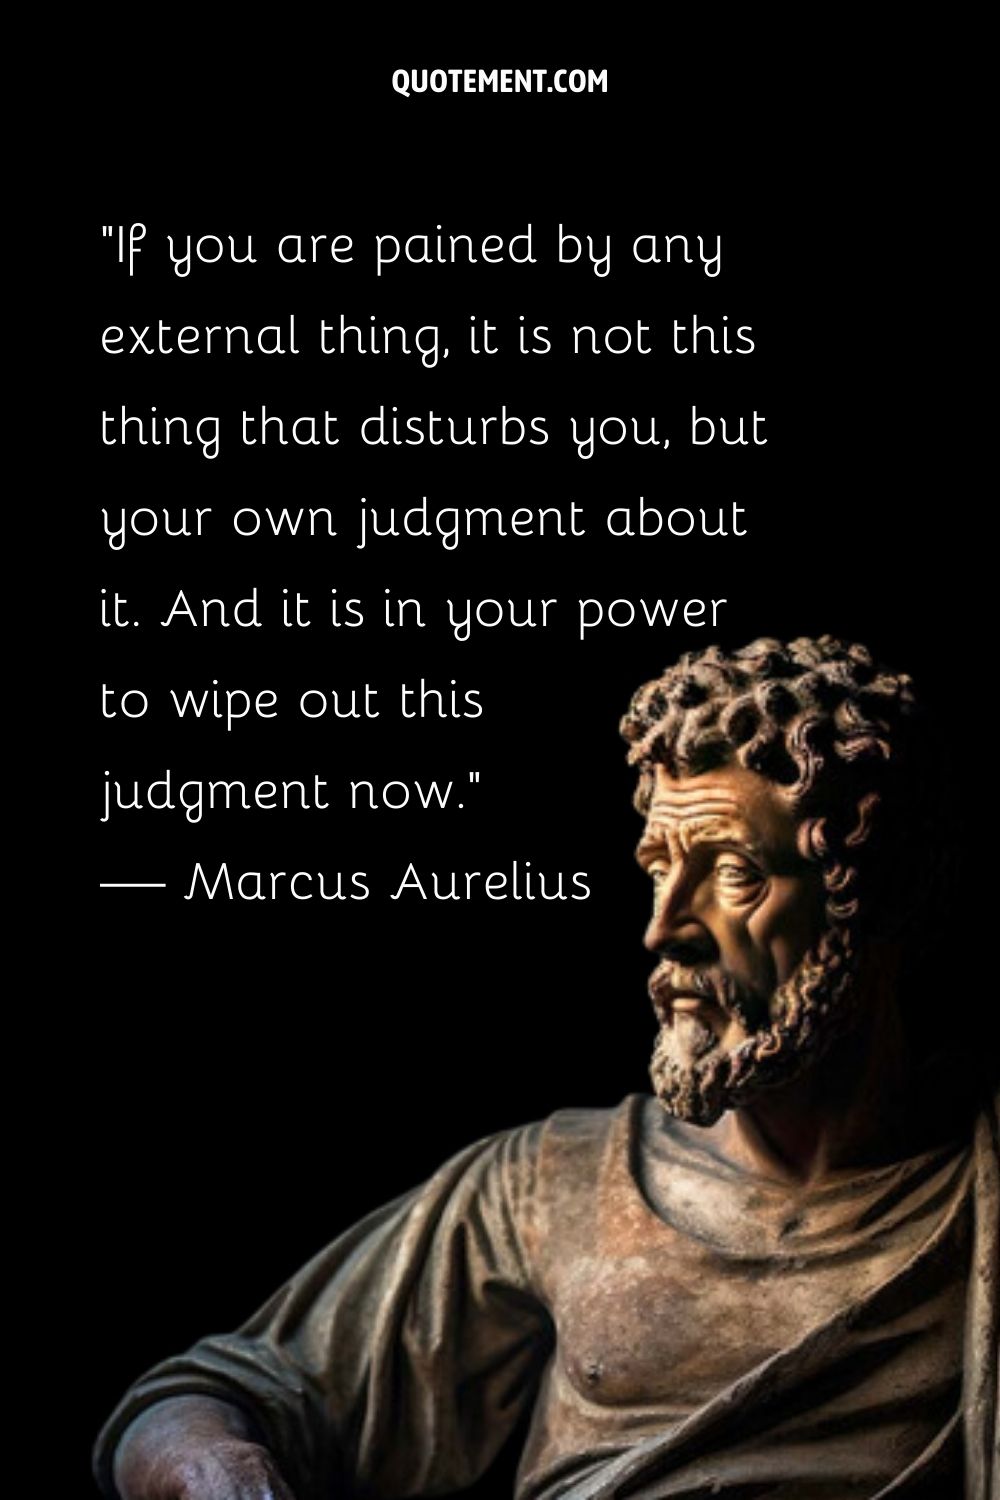 La sabiduría de Marco Aurelio esculpida con gracia.